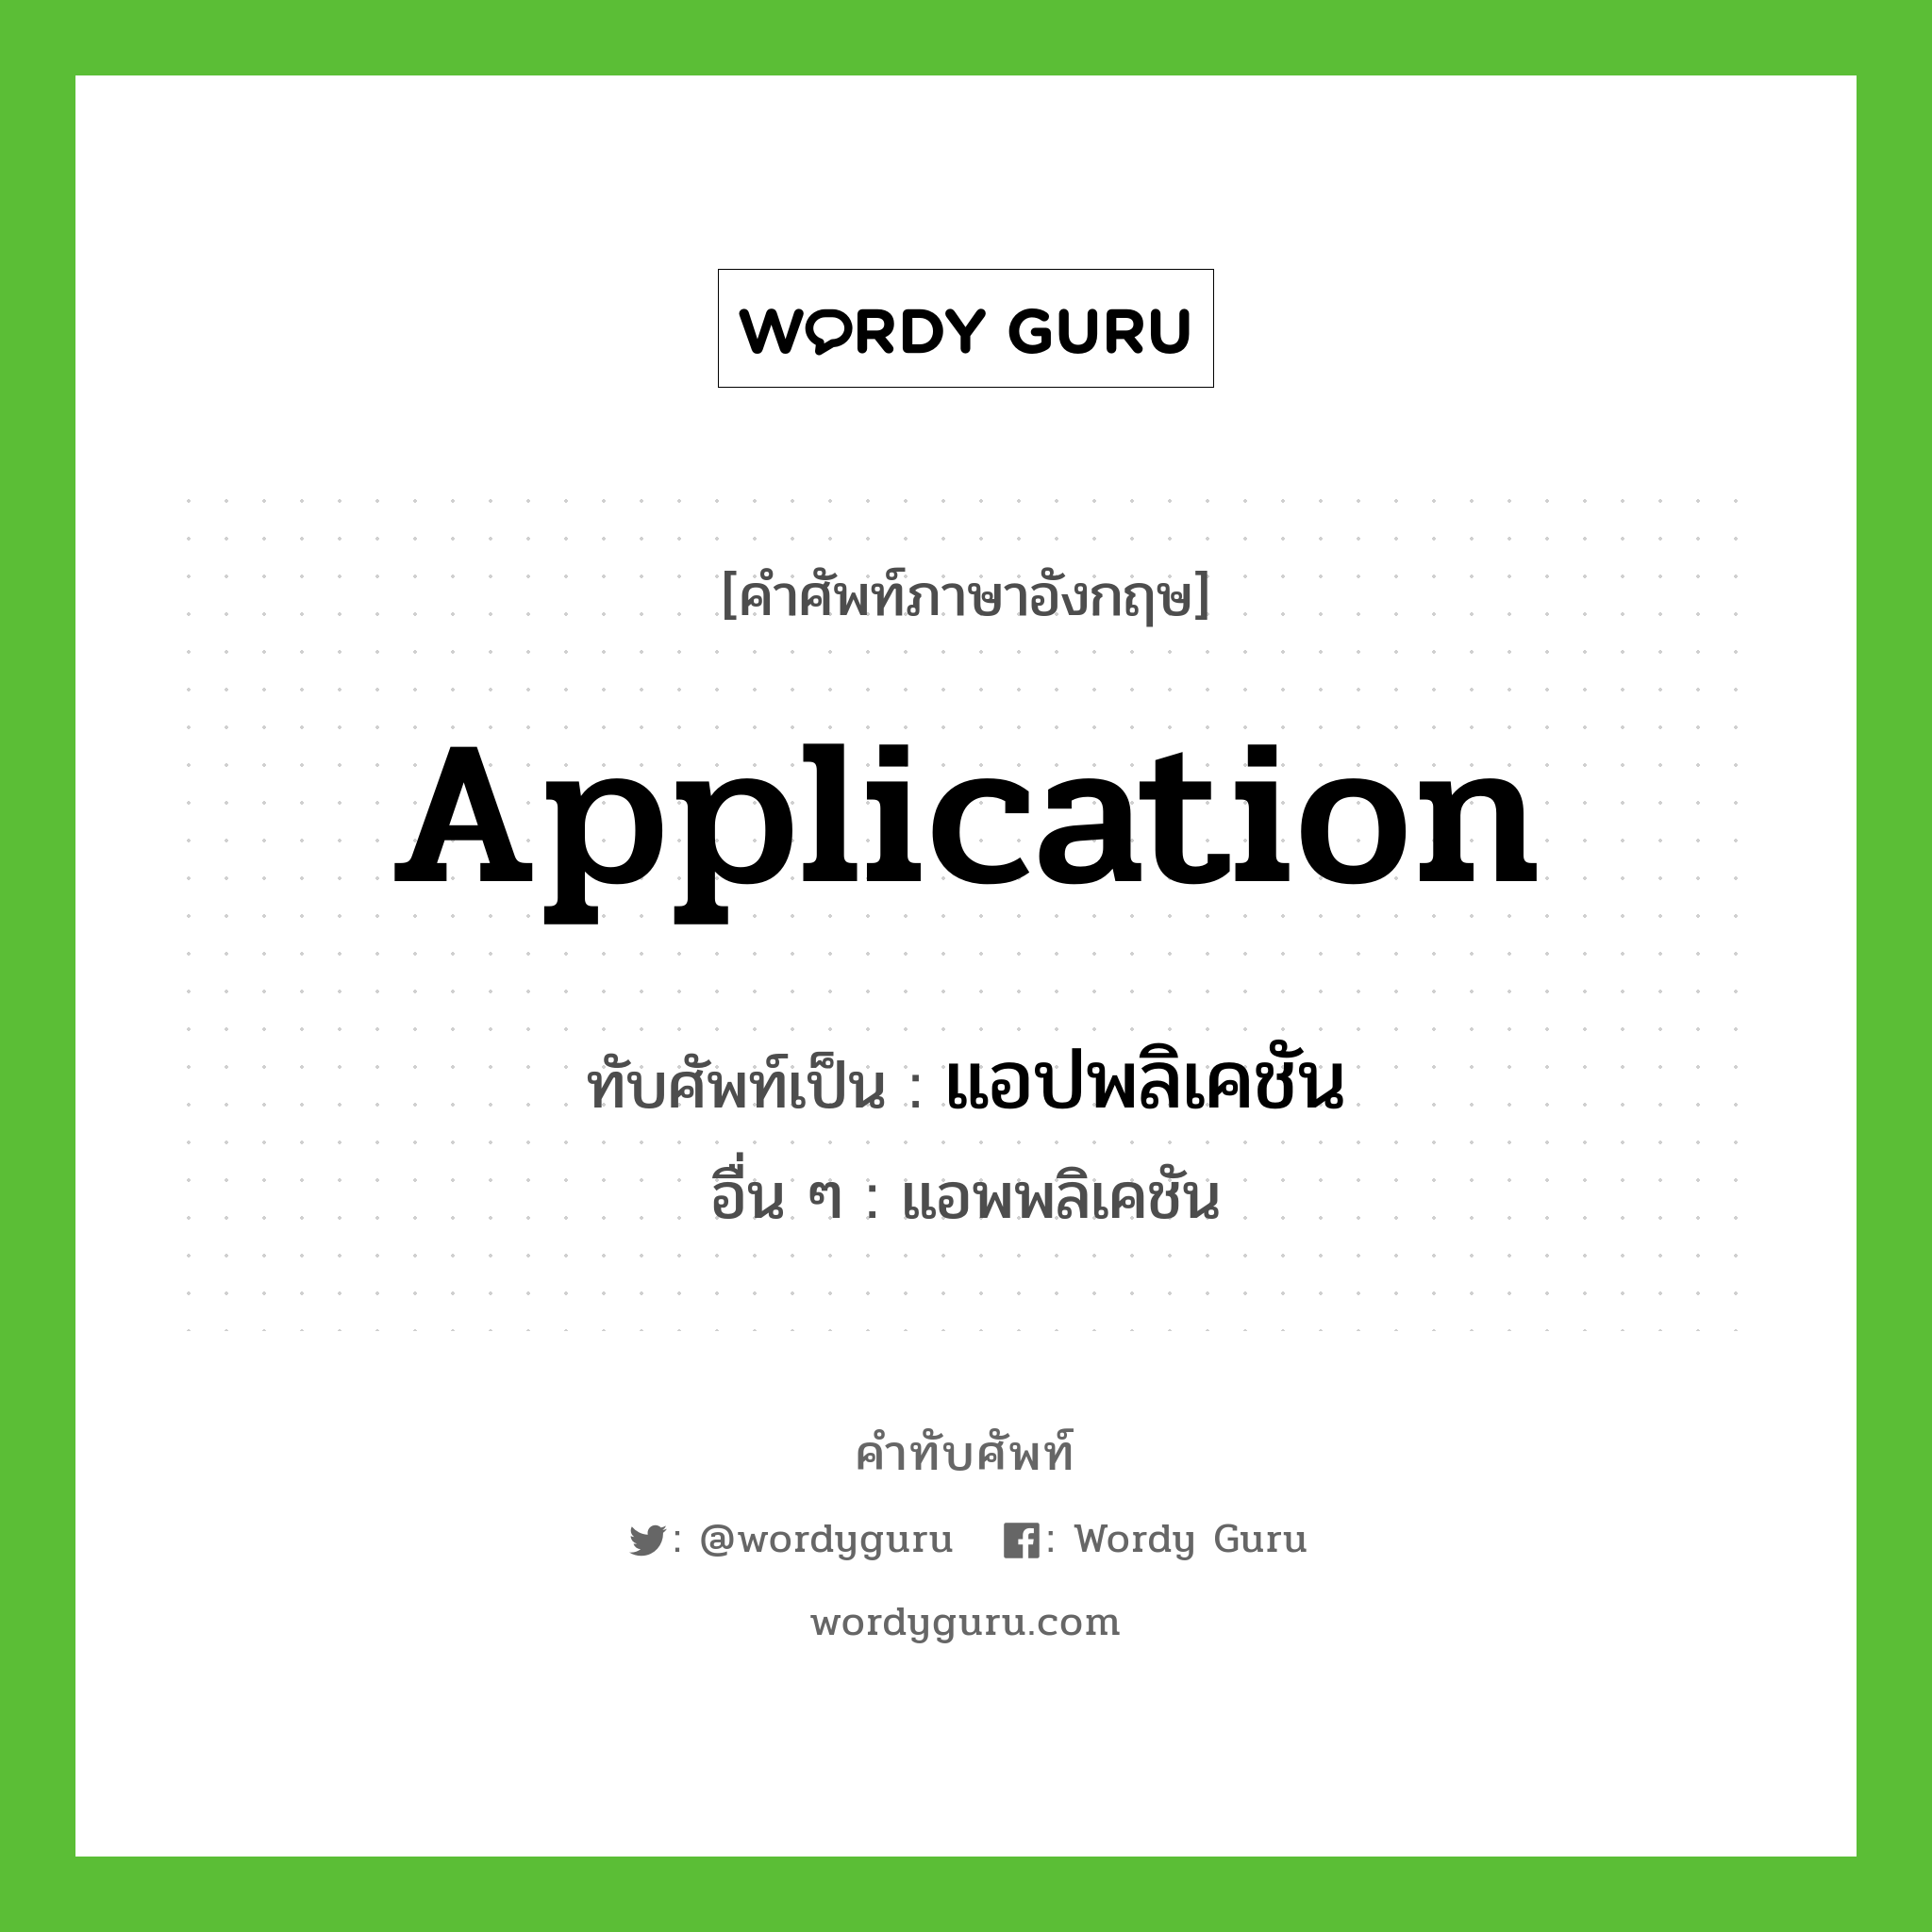 application เขียนเป็นคำไทยว่าอะไร?, คำศัพท์ภาษาอังกฤษ application ทับศัพท์เป็น แอปพลิเคชัน อื่น ๆ แอพพลิเคชัน